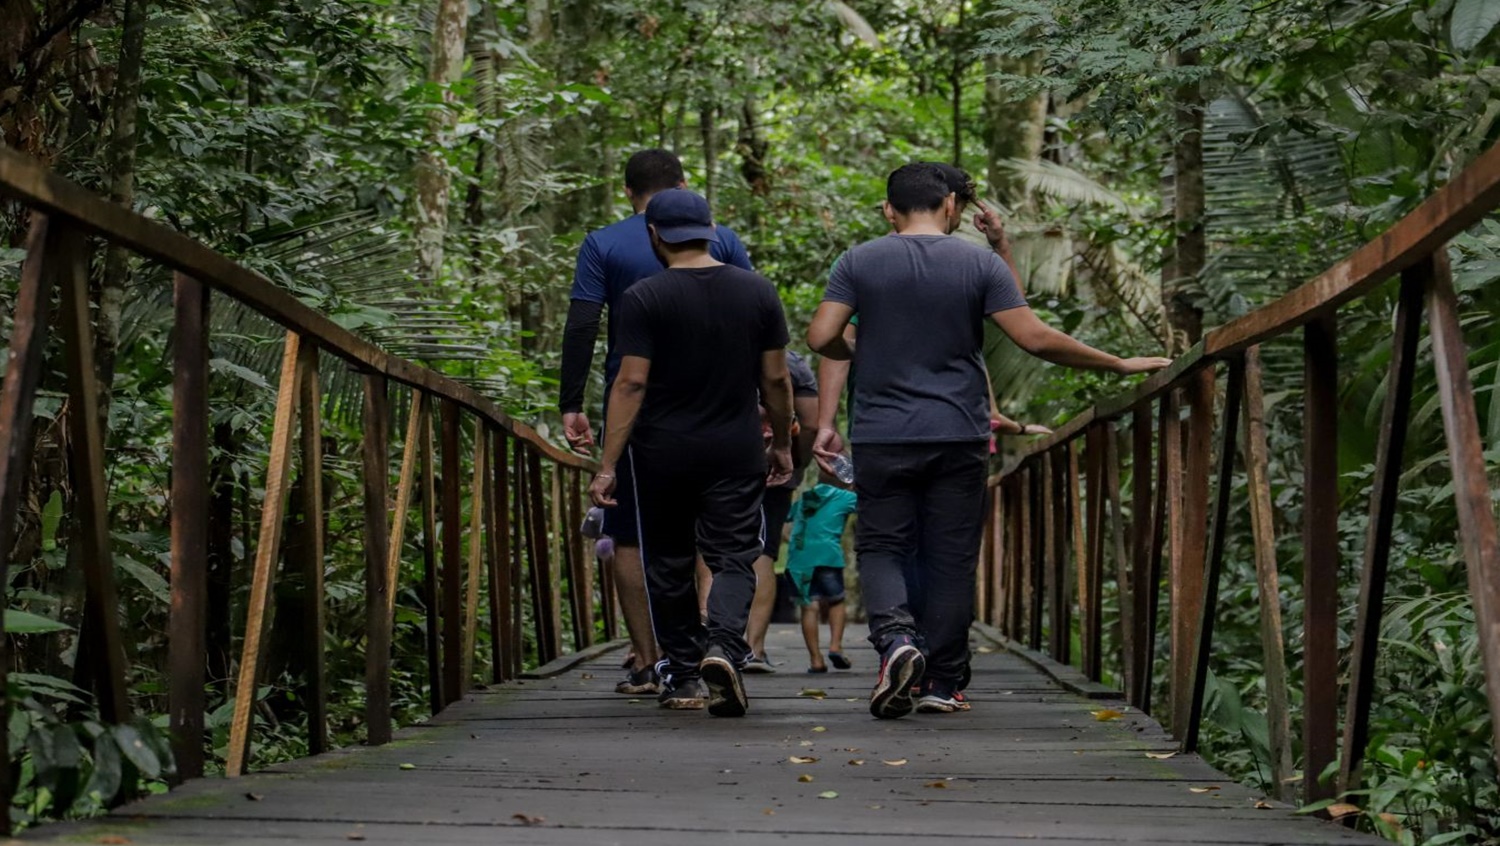 CAMINHADA: Rota Ecológica promove walking tour no Parque Natural de Porto Velho